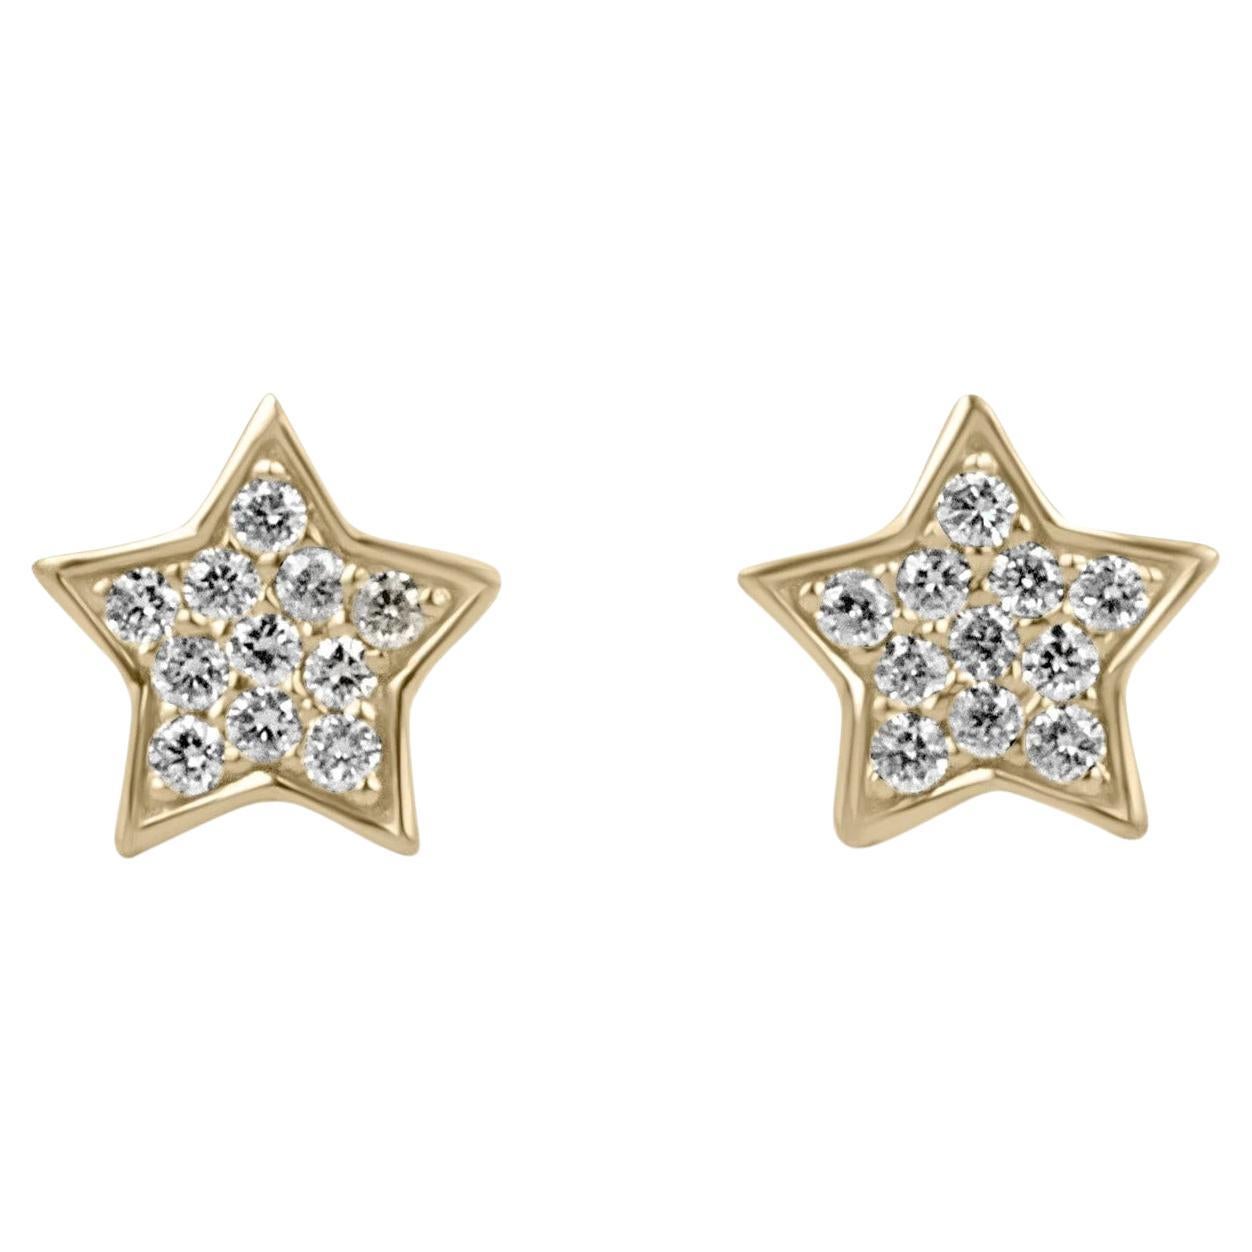 Petite Flat Star Pavé Set Diamond Mini Stud Earrings Yellow Gold 14K